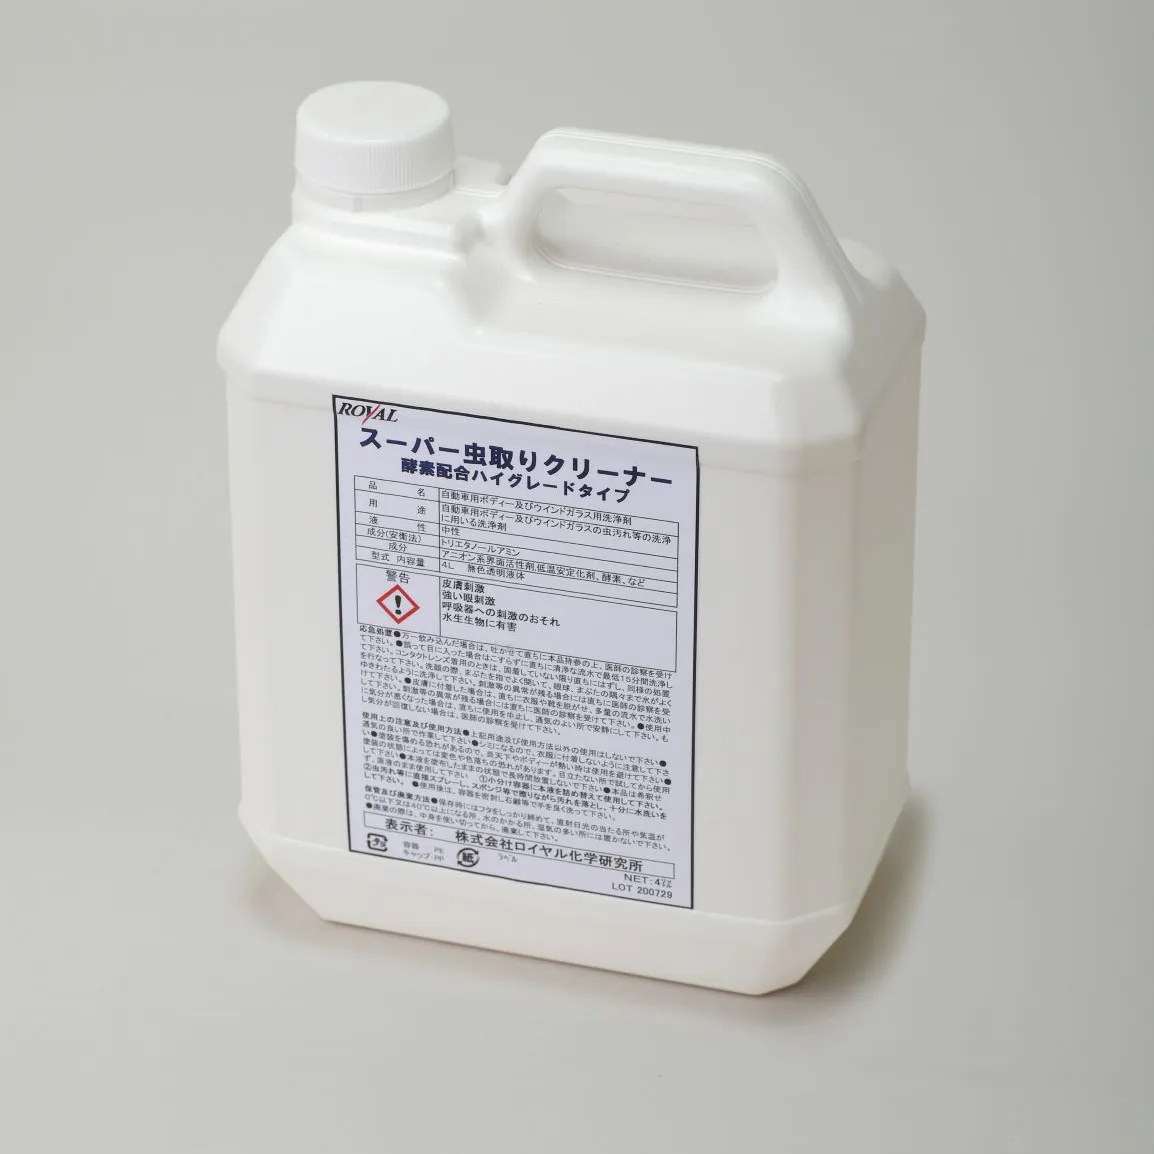 SUPER INSECT REMOVE CLEANER-Hergestellt in Japan, OEM erhältlich